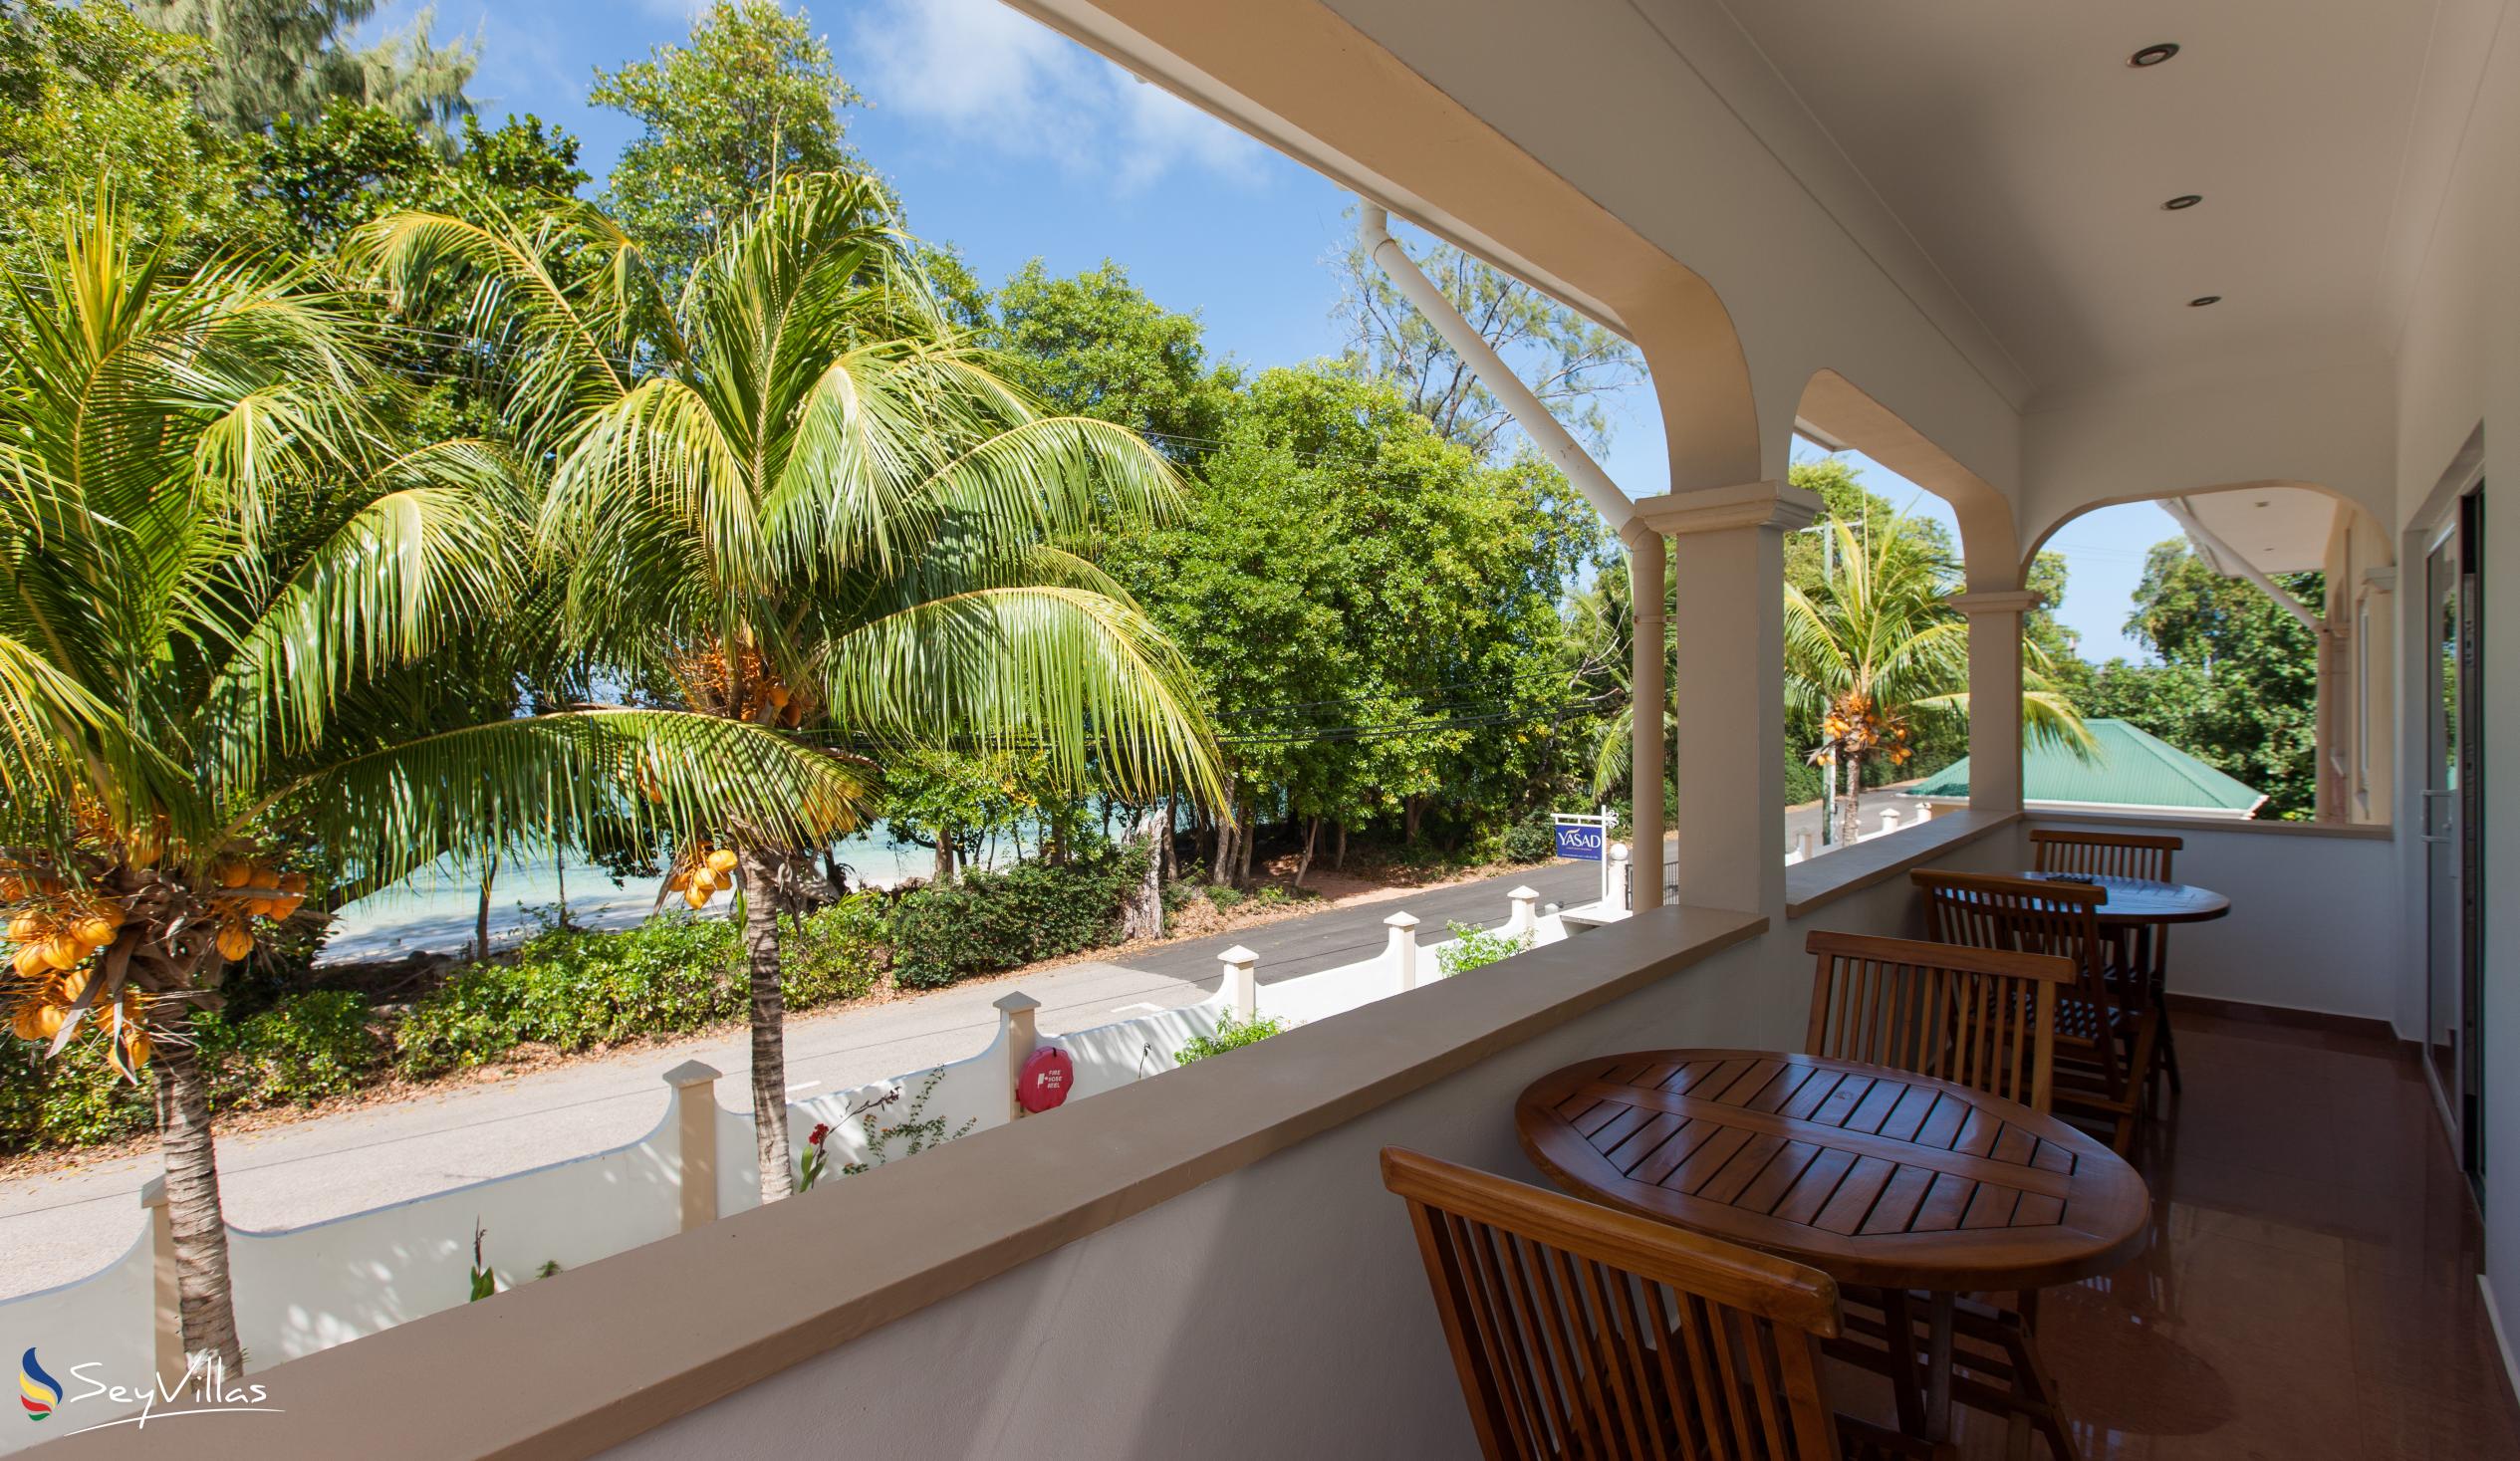 Foto 8: YASAD Luxury Beach Residence - Appartement mit 3 Schlafzimmern - Praslin (Seychellen)